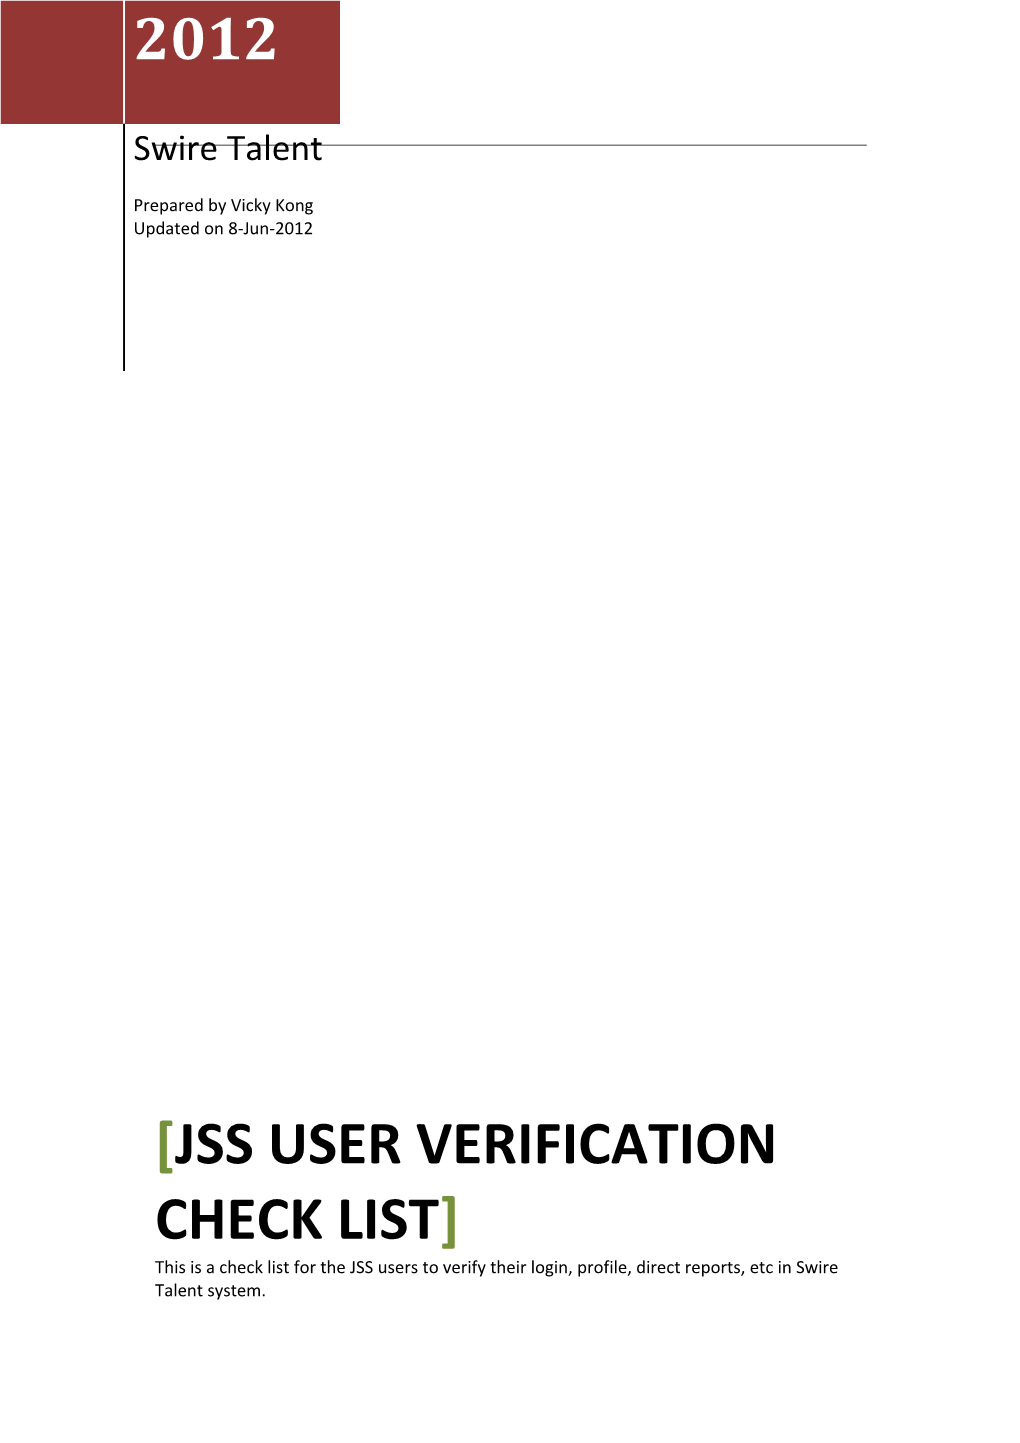 Jss User Verification Check List